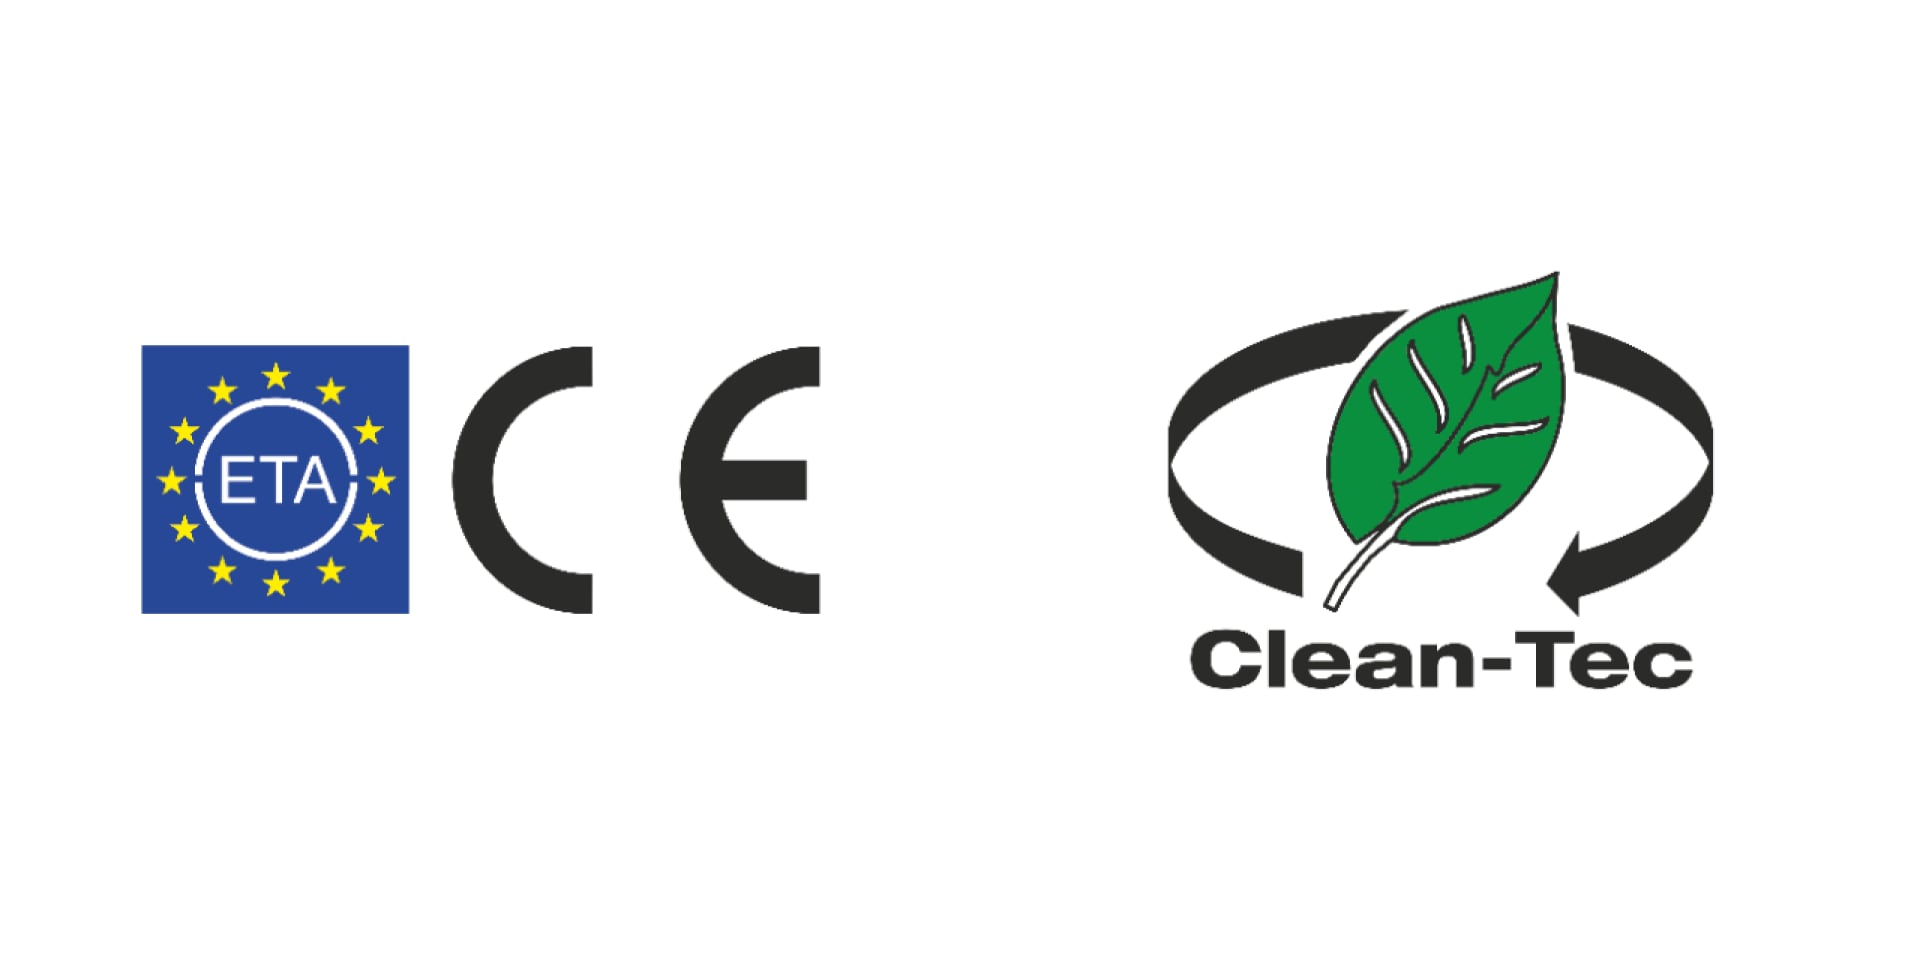 Aprovações ETA e CE, além de Hilti Clean-Tec